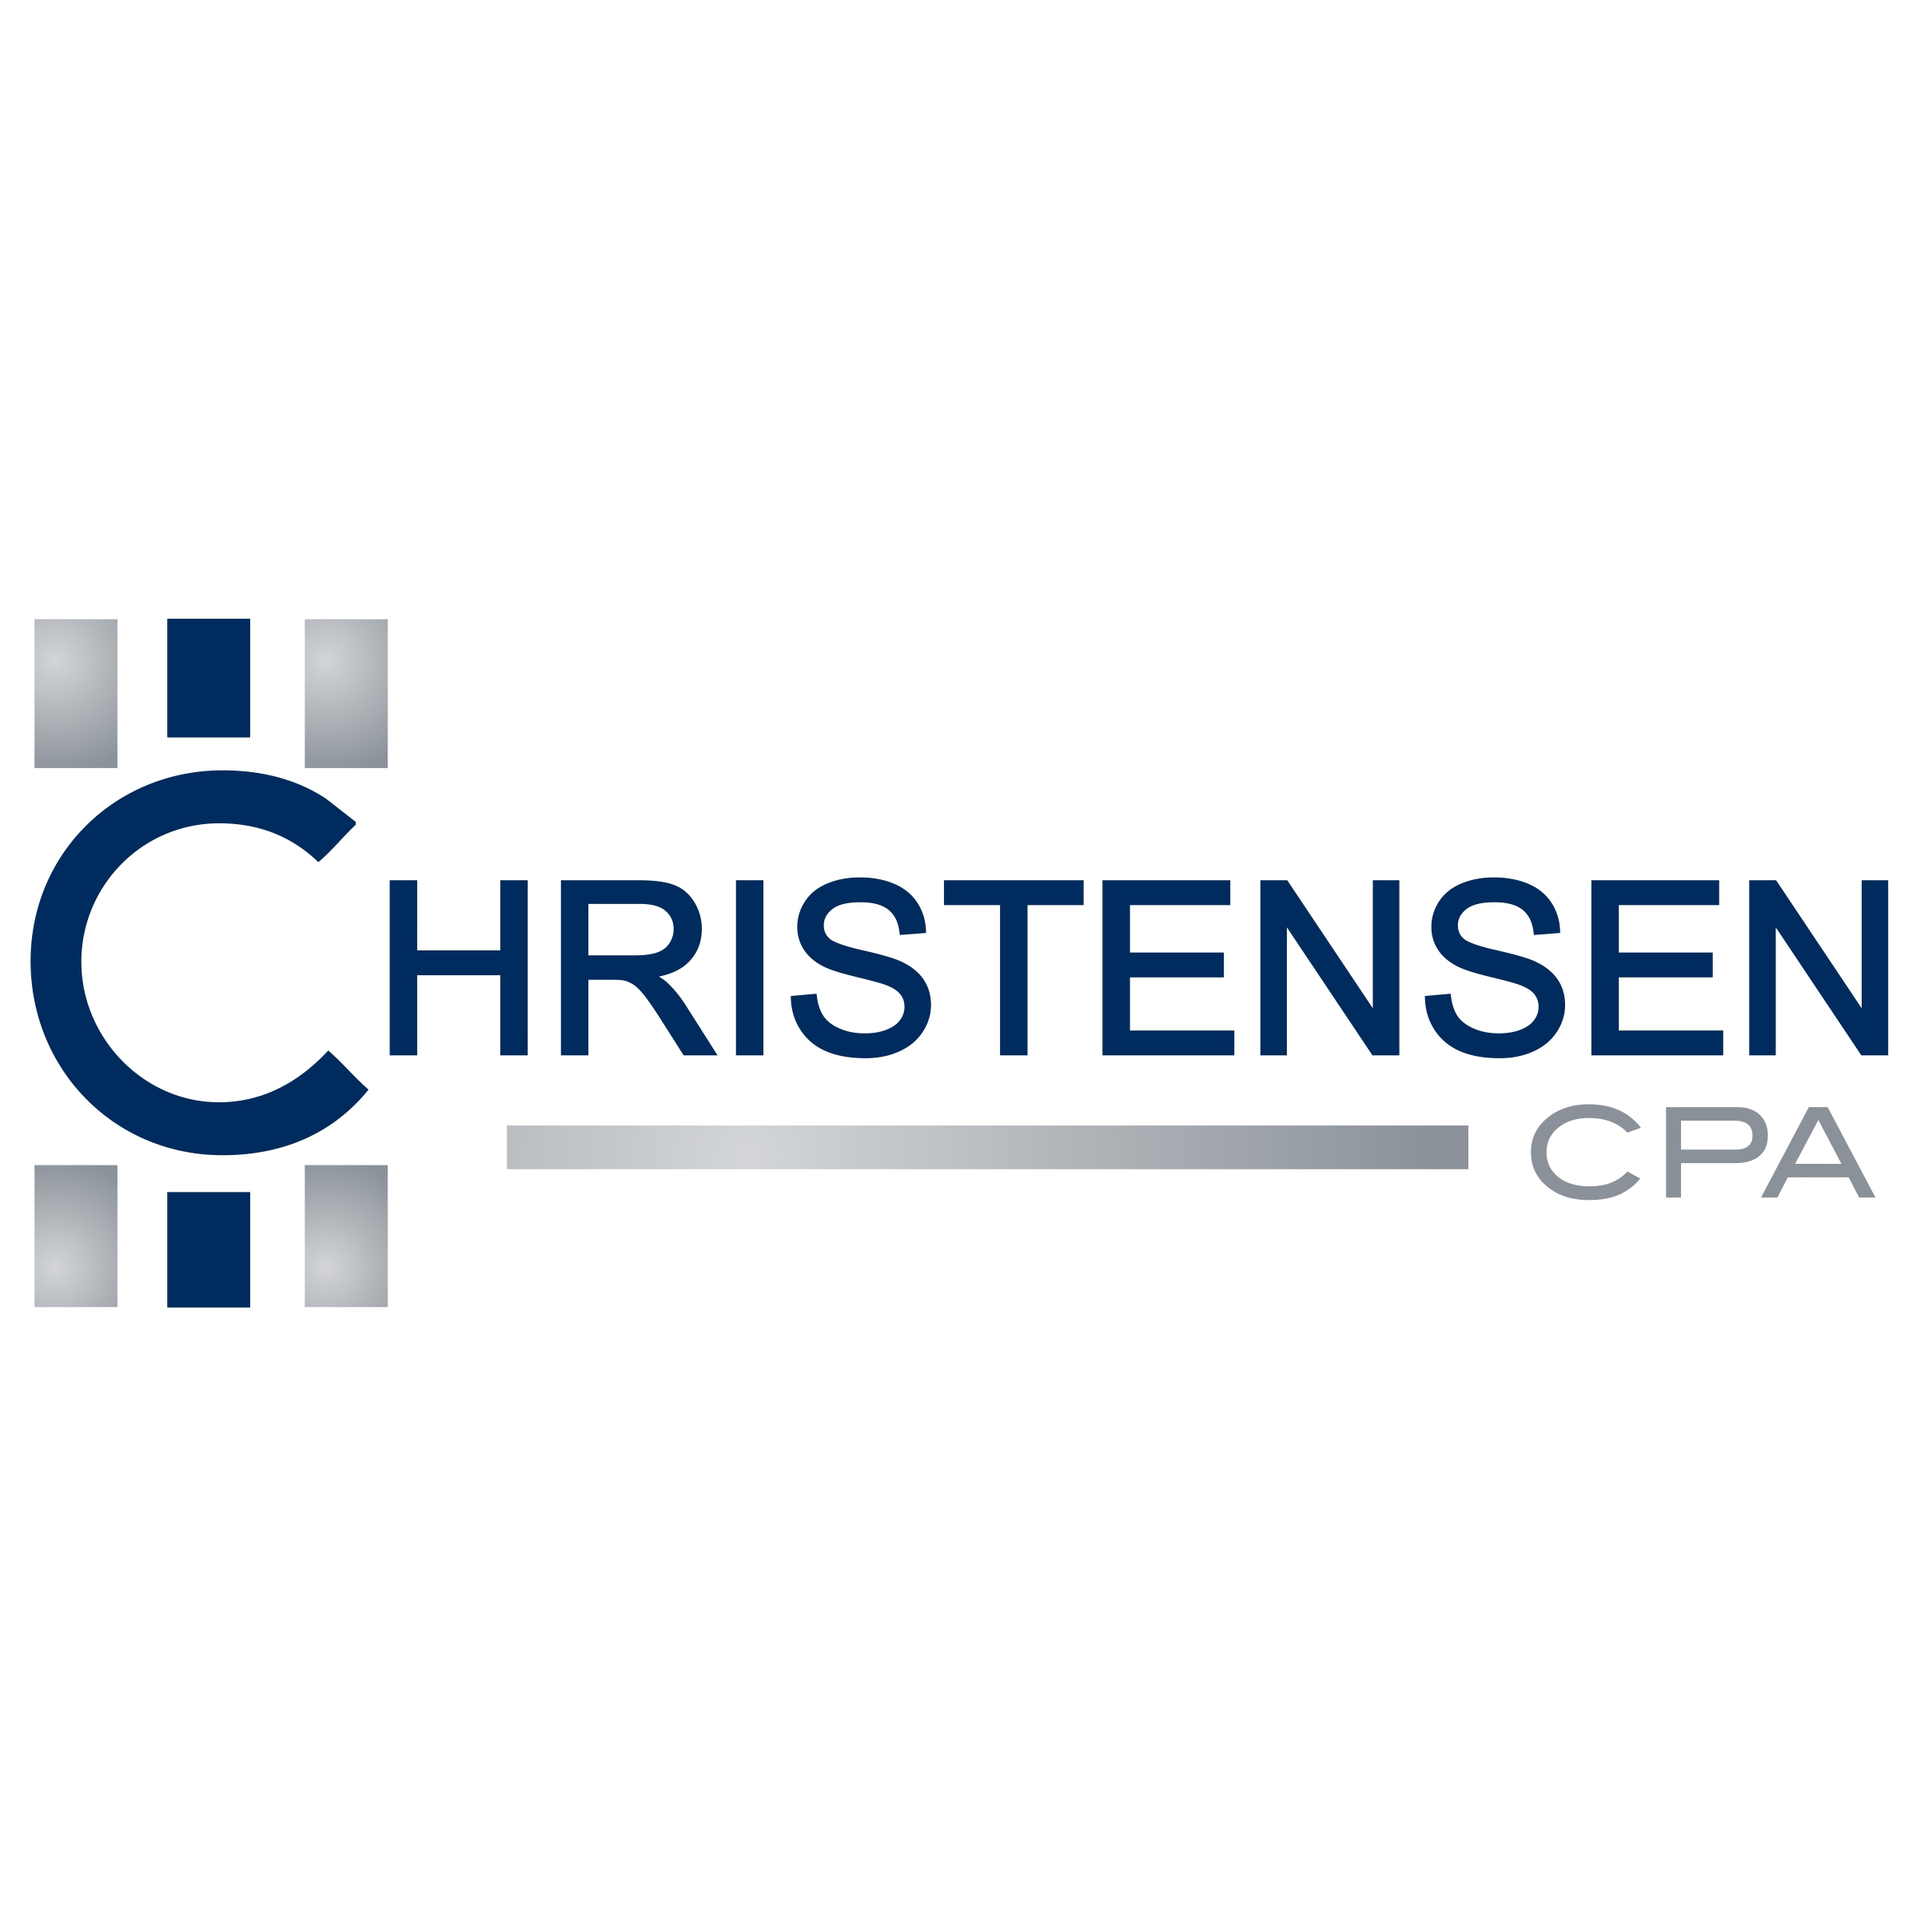 Christensen CPA Logo